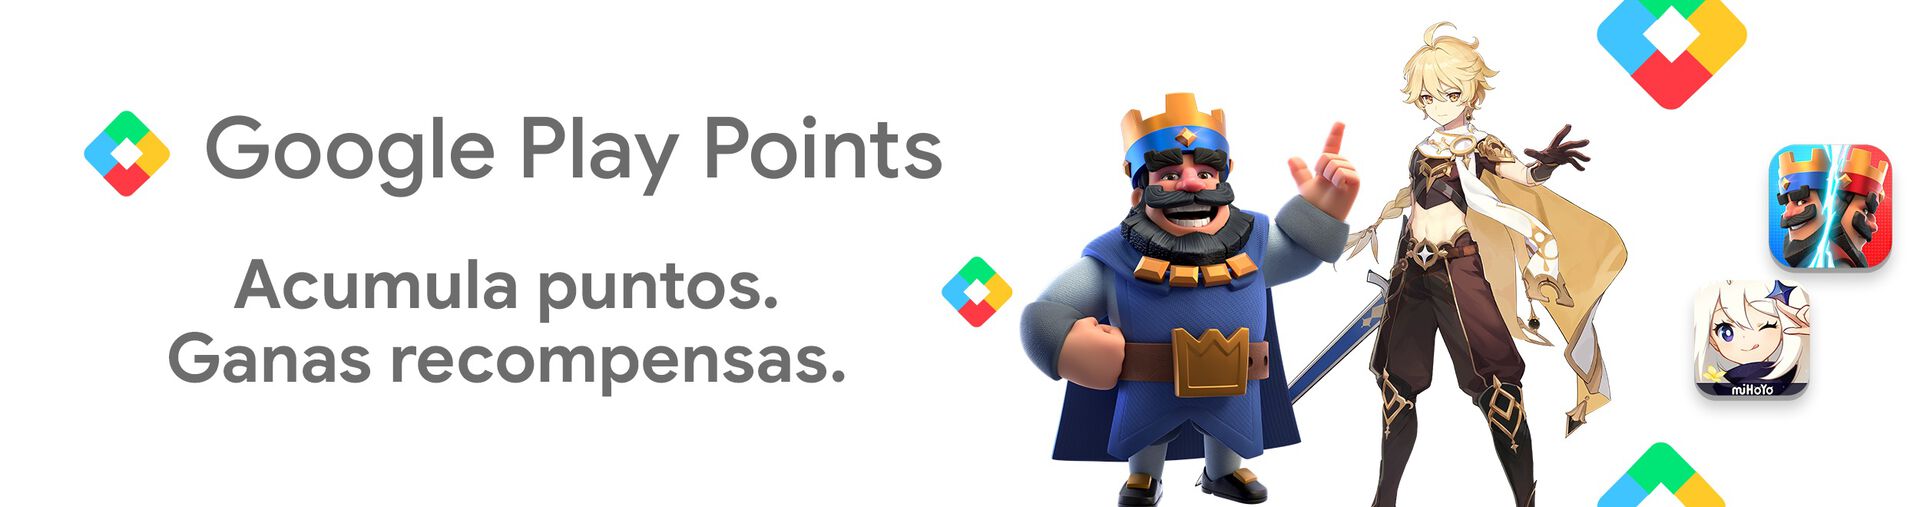  Con Google Play Points acumula puntos y gana recompensas.